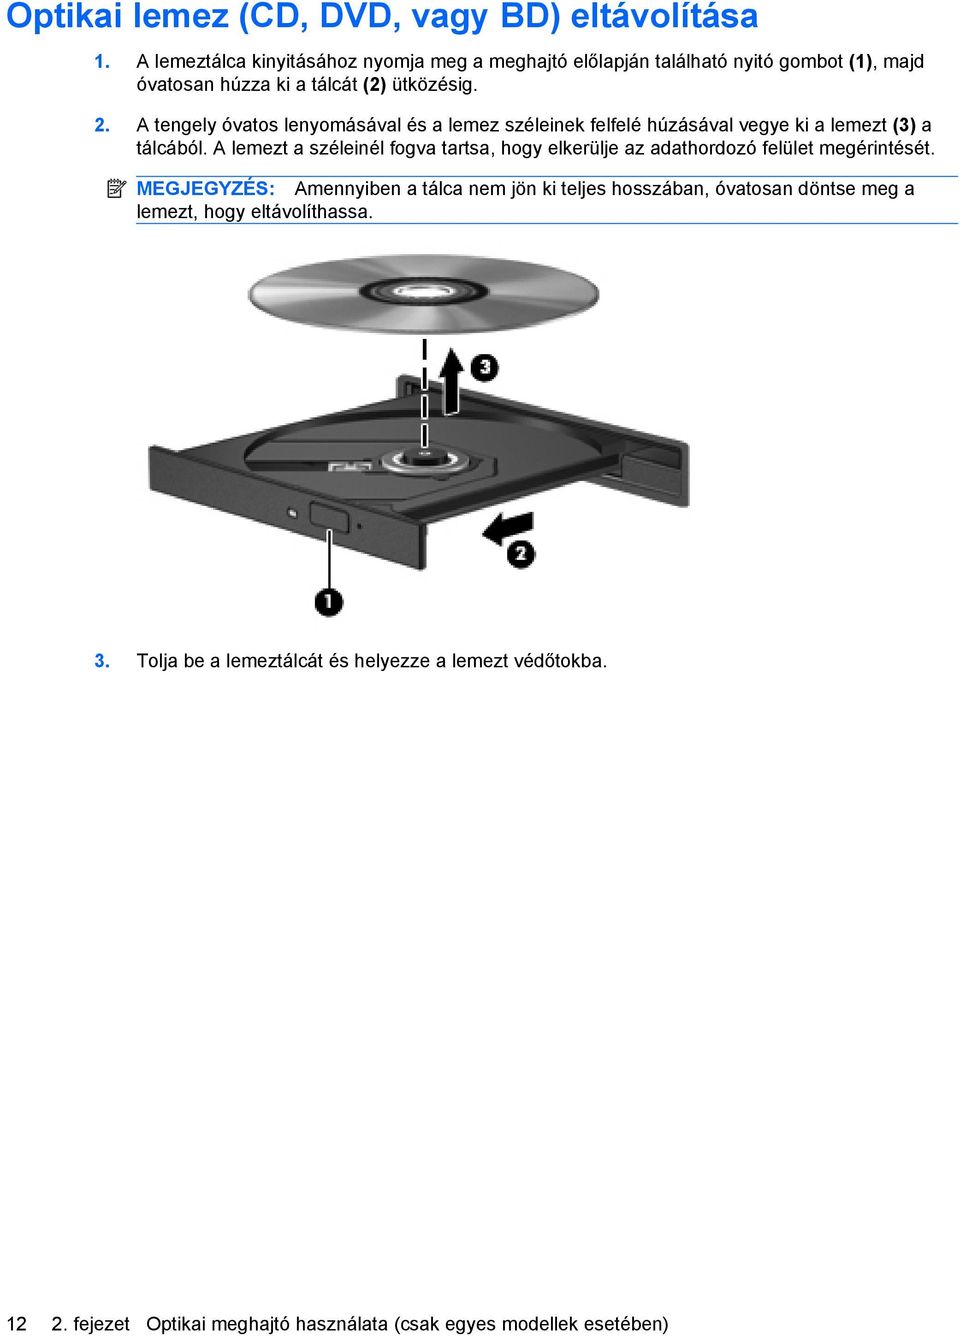 A tengely óvatos lenyomásával és a lemez széleinek felfelé húzásával vegye ki a lemezt (3) a tálcából.